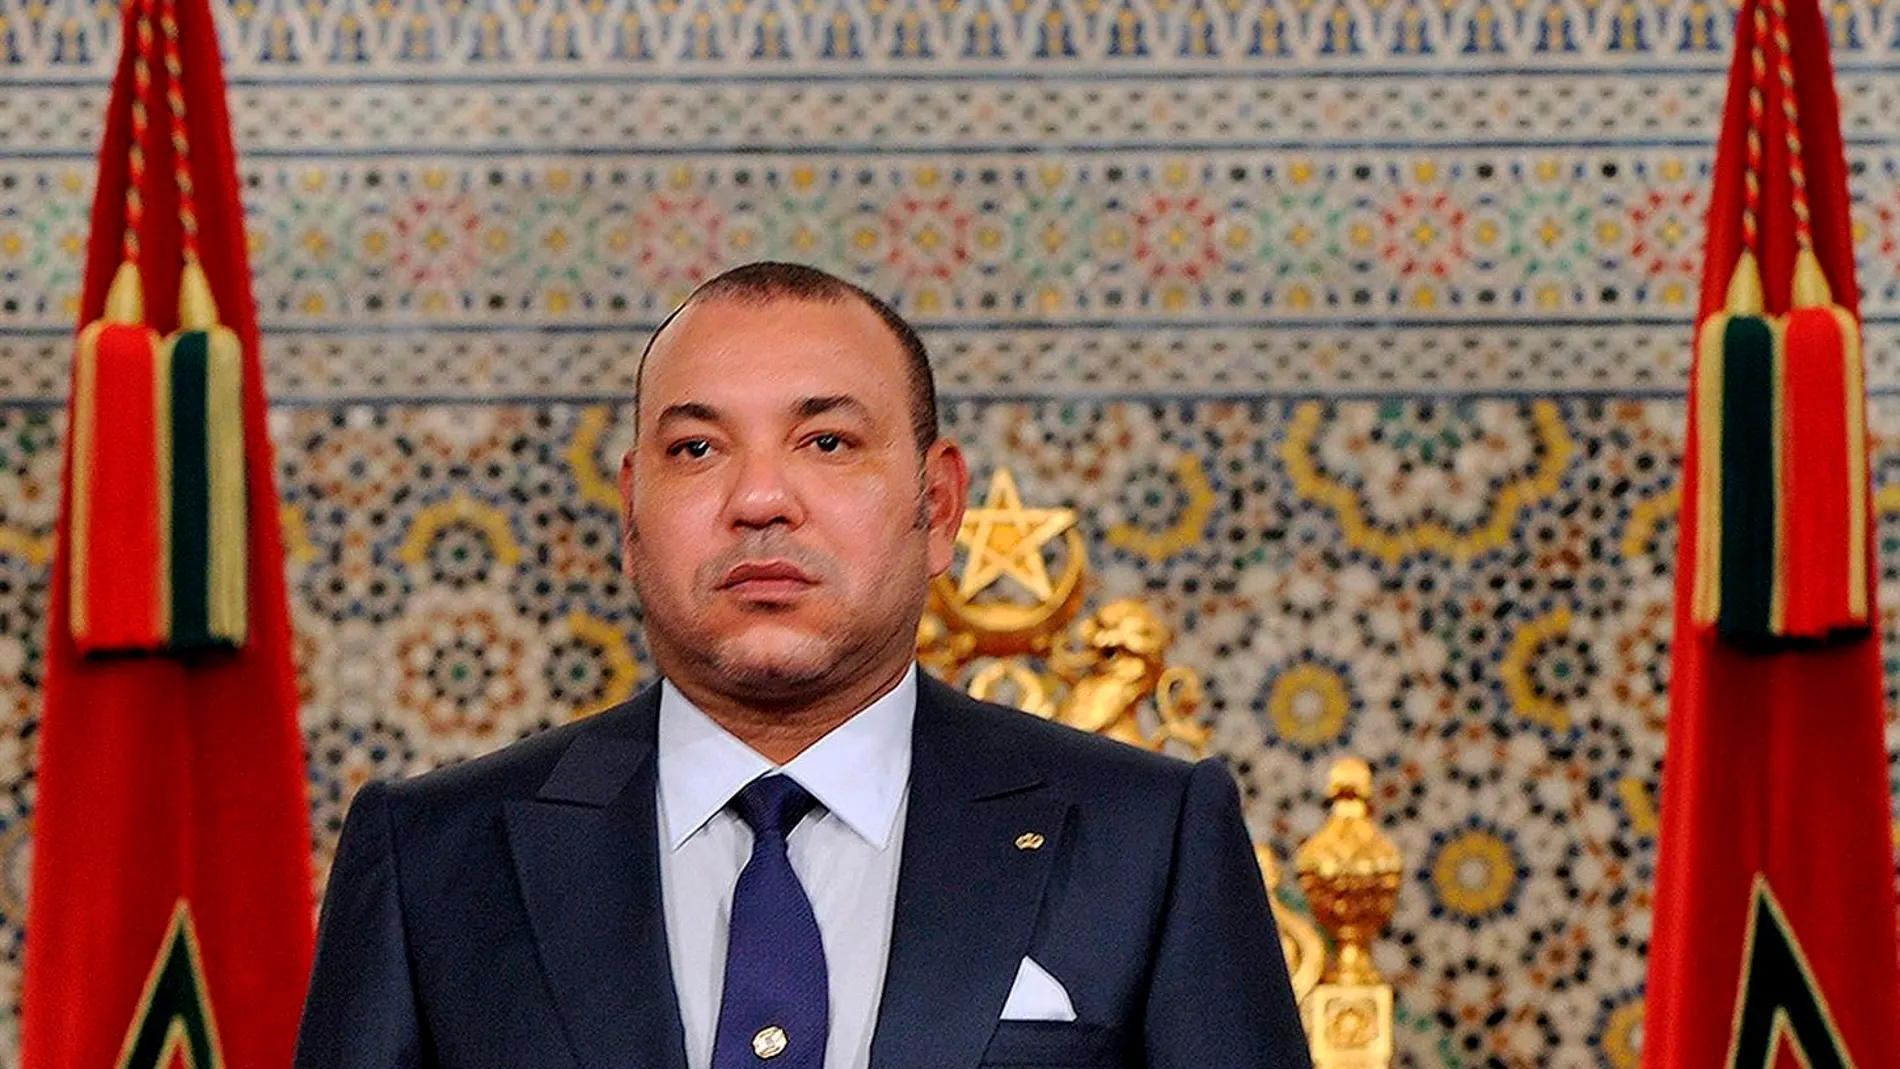 Mohamed VI aprecia la "clara y responsable" posición de España sobre la "marroquidad" del Sáhara